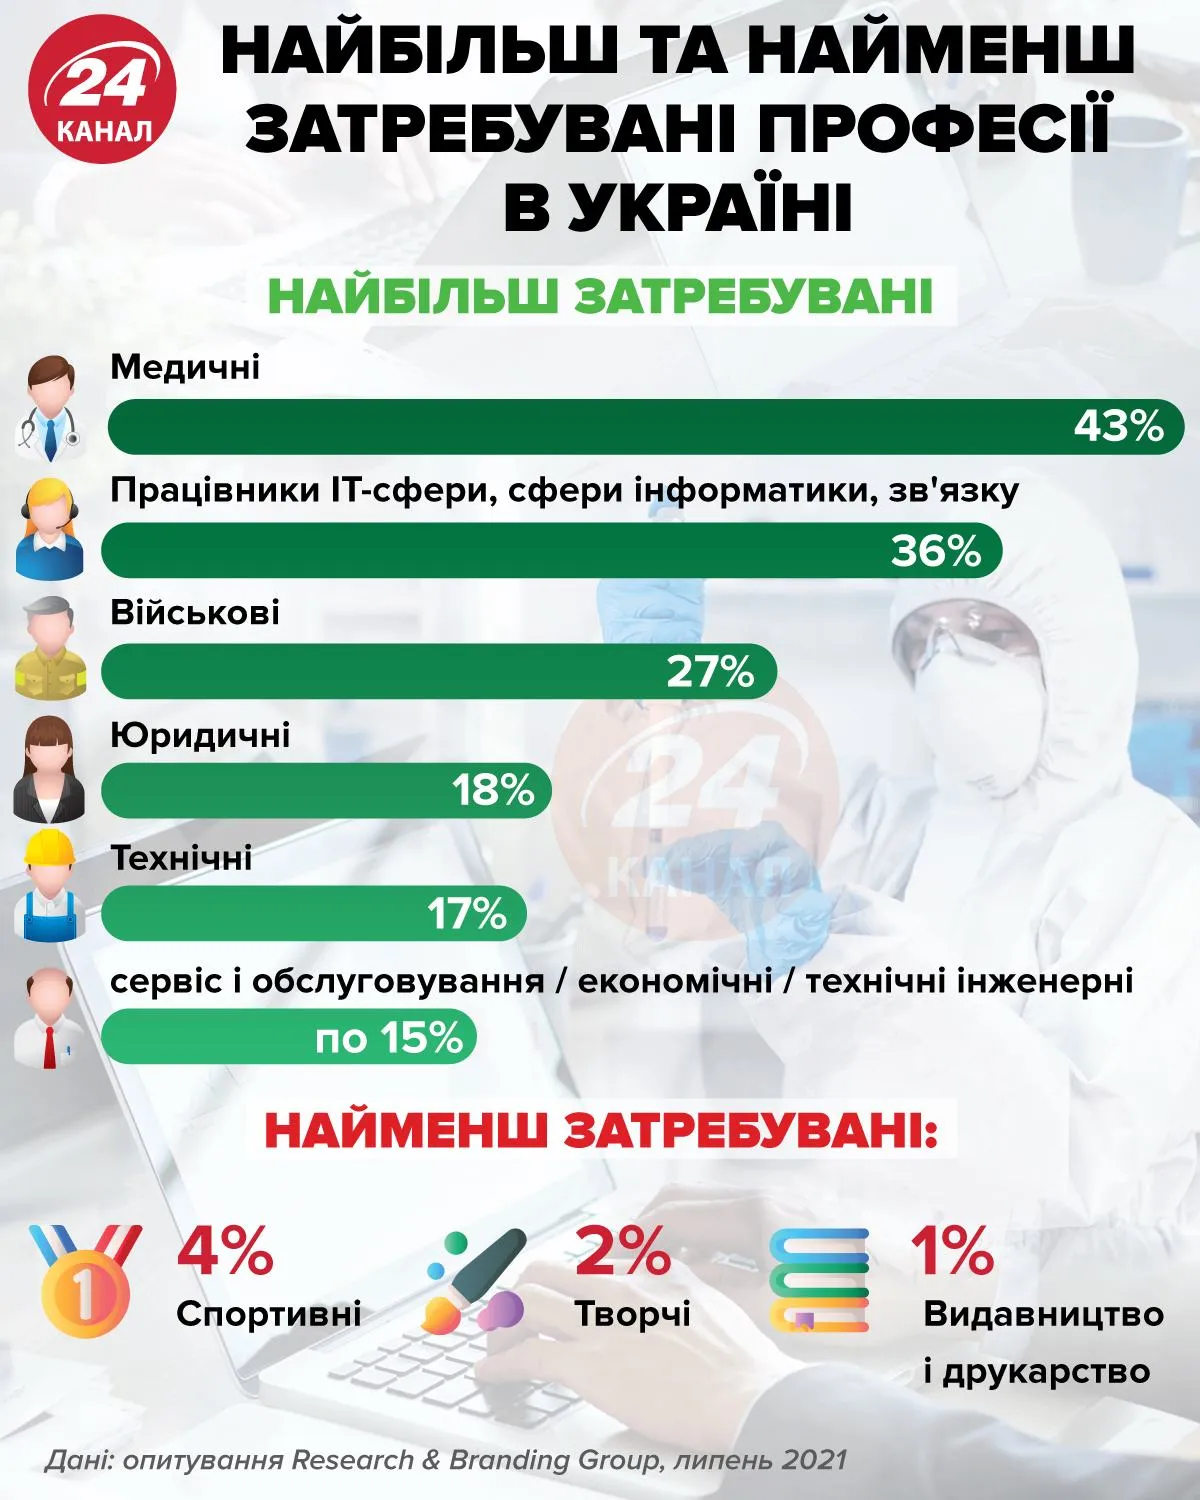 Найбільш та найменш затребувані професії в Україні / Інфографіка 24 каналу